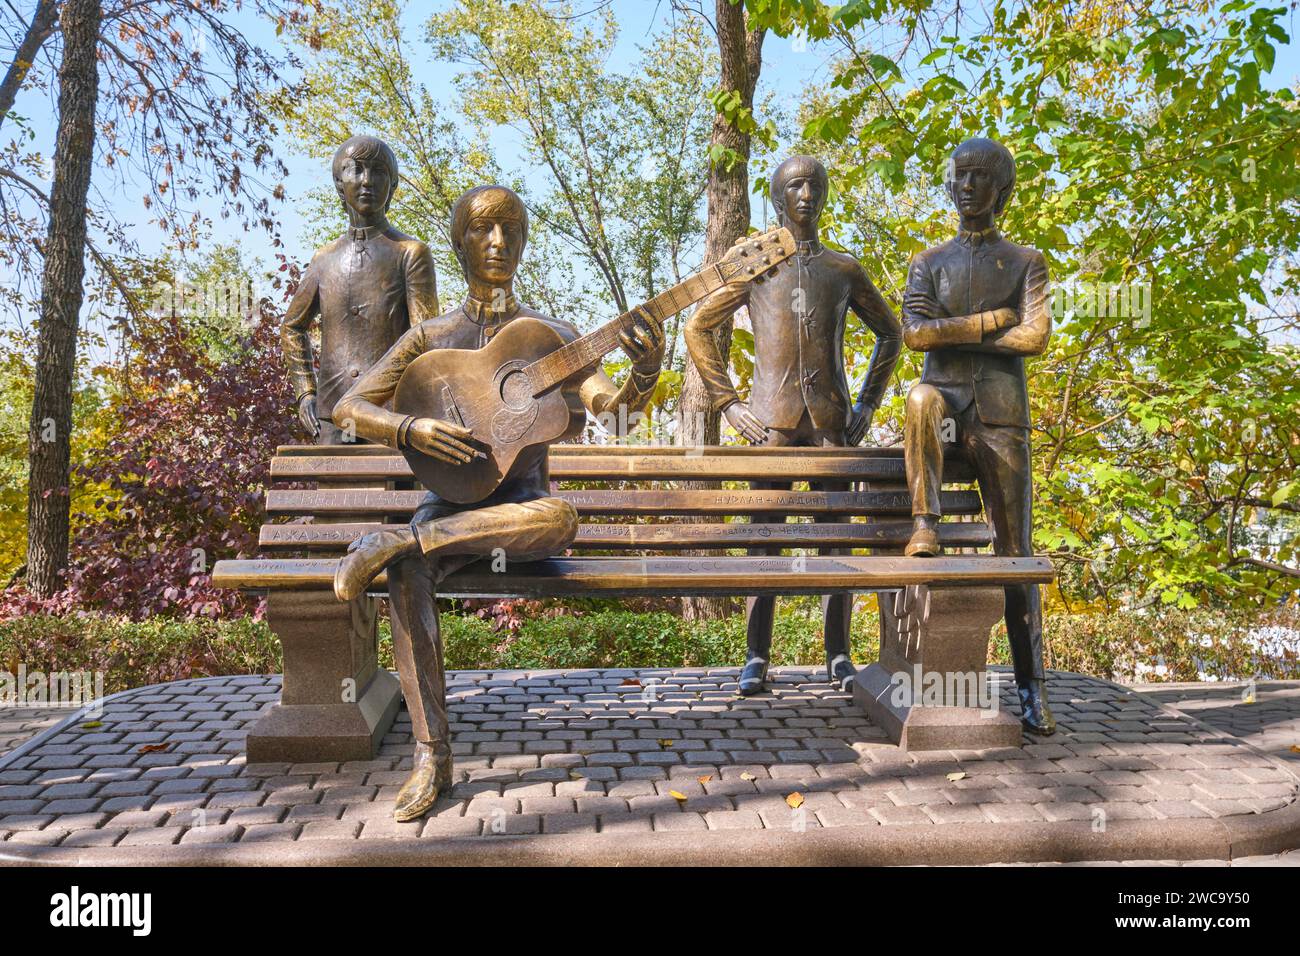 Eine lebensgroße Bronzeskulptur der Band The Beatles. Auf dem Gipfel des touristischen Vergnügungsparks von Kok Tobe in Almaty, Kasachstan. Stockfoto